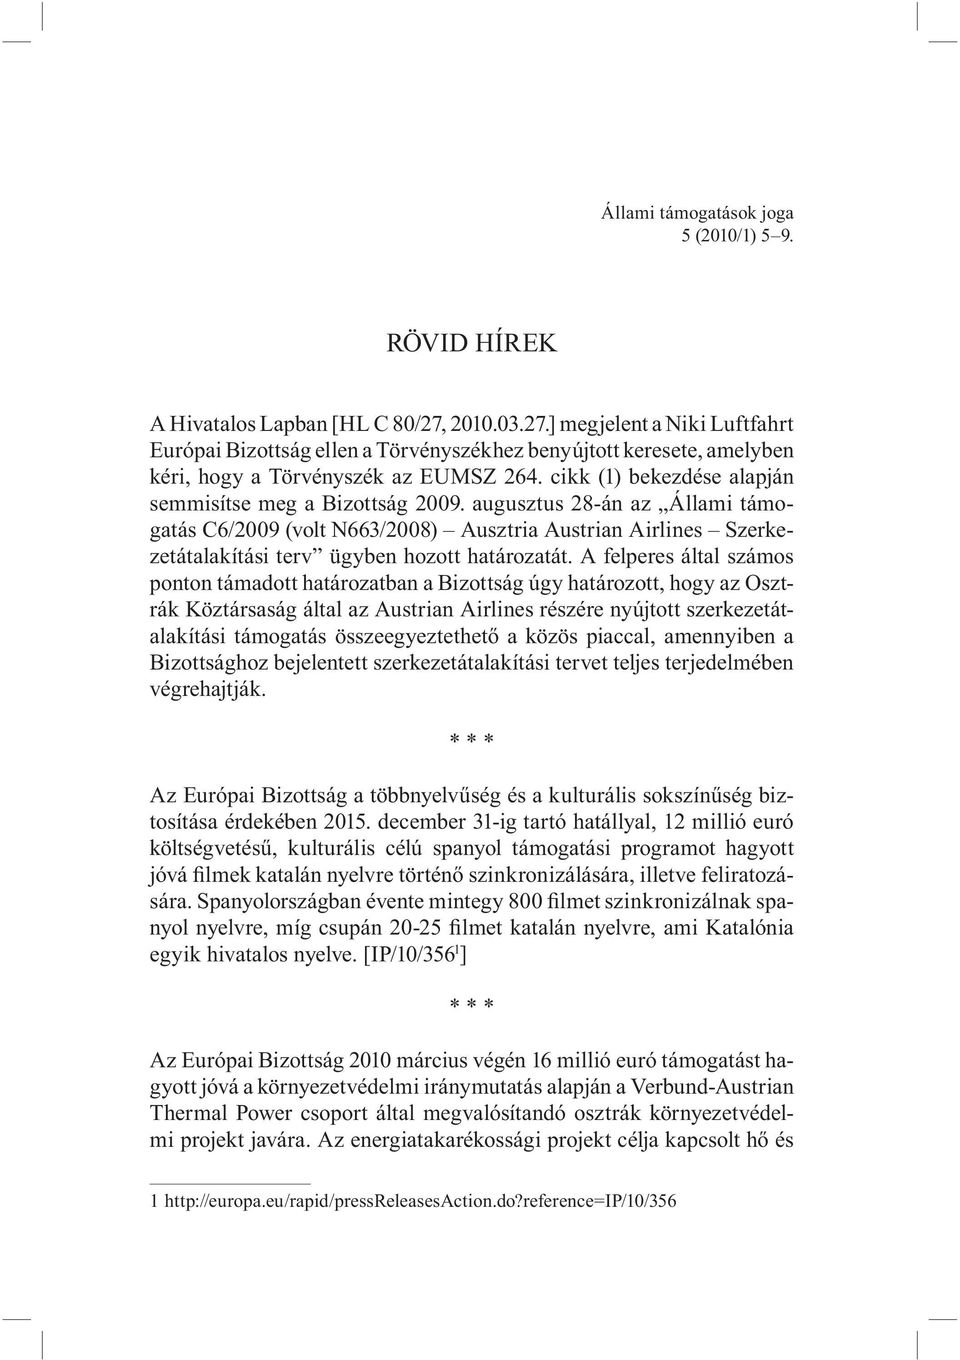 cikk (1) bekezdése alapján semmisítse meg a Bizottság augusztus 28-án az Állami támogatás C6/2009 (volt N663/2008) Ausztria Austrian Airlines Szerkezetátalakítási terv ügyben hozott határozatát.